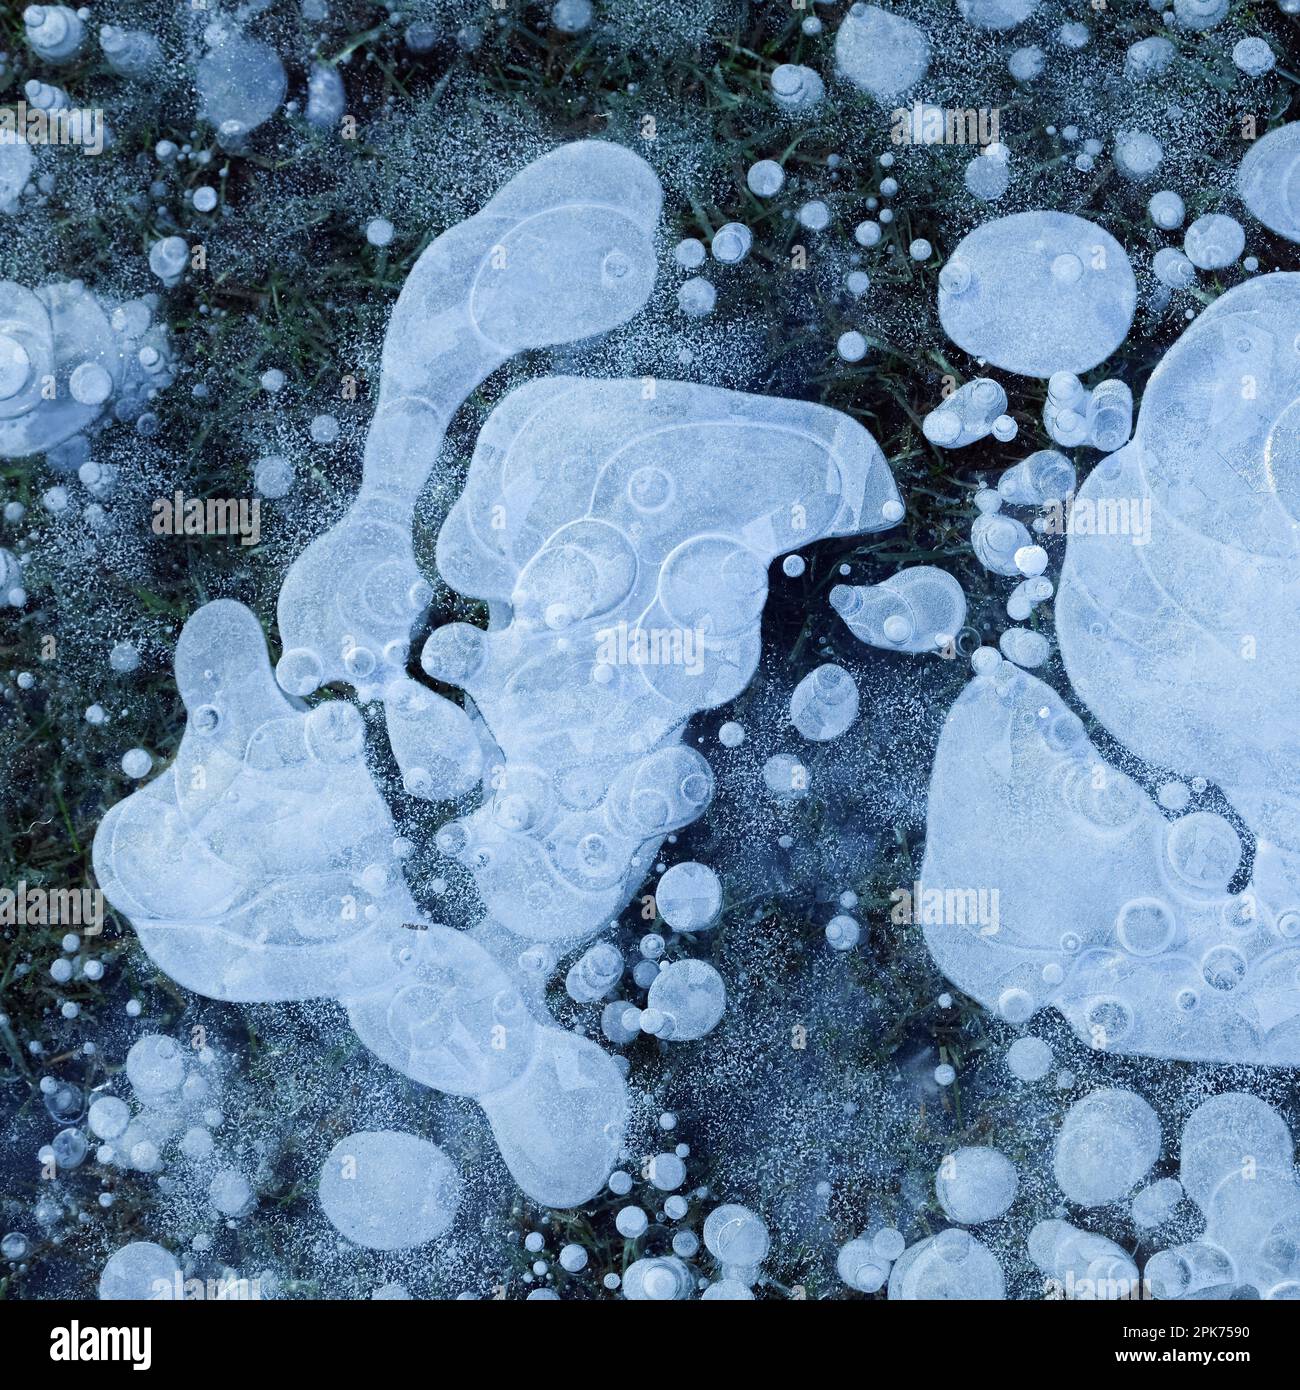 Bolle d'aria... Ghiaccio (alluvione invernale 2020/2021 ), strato di ghiaccio con bolle d'aria congelate su un prato allagato e congelato durante il brina grave in Renania Foto Stock